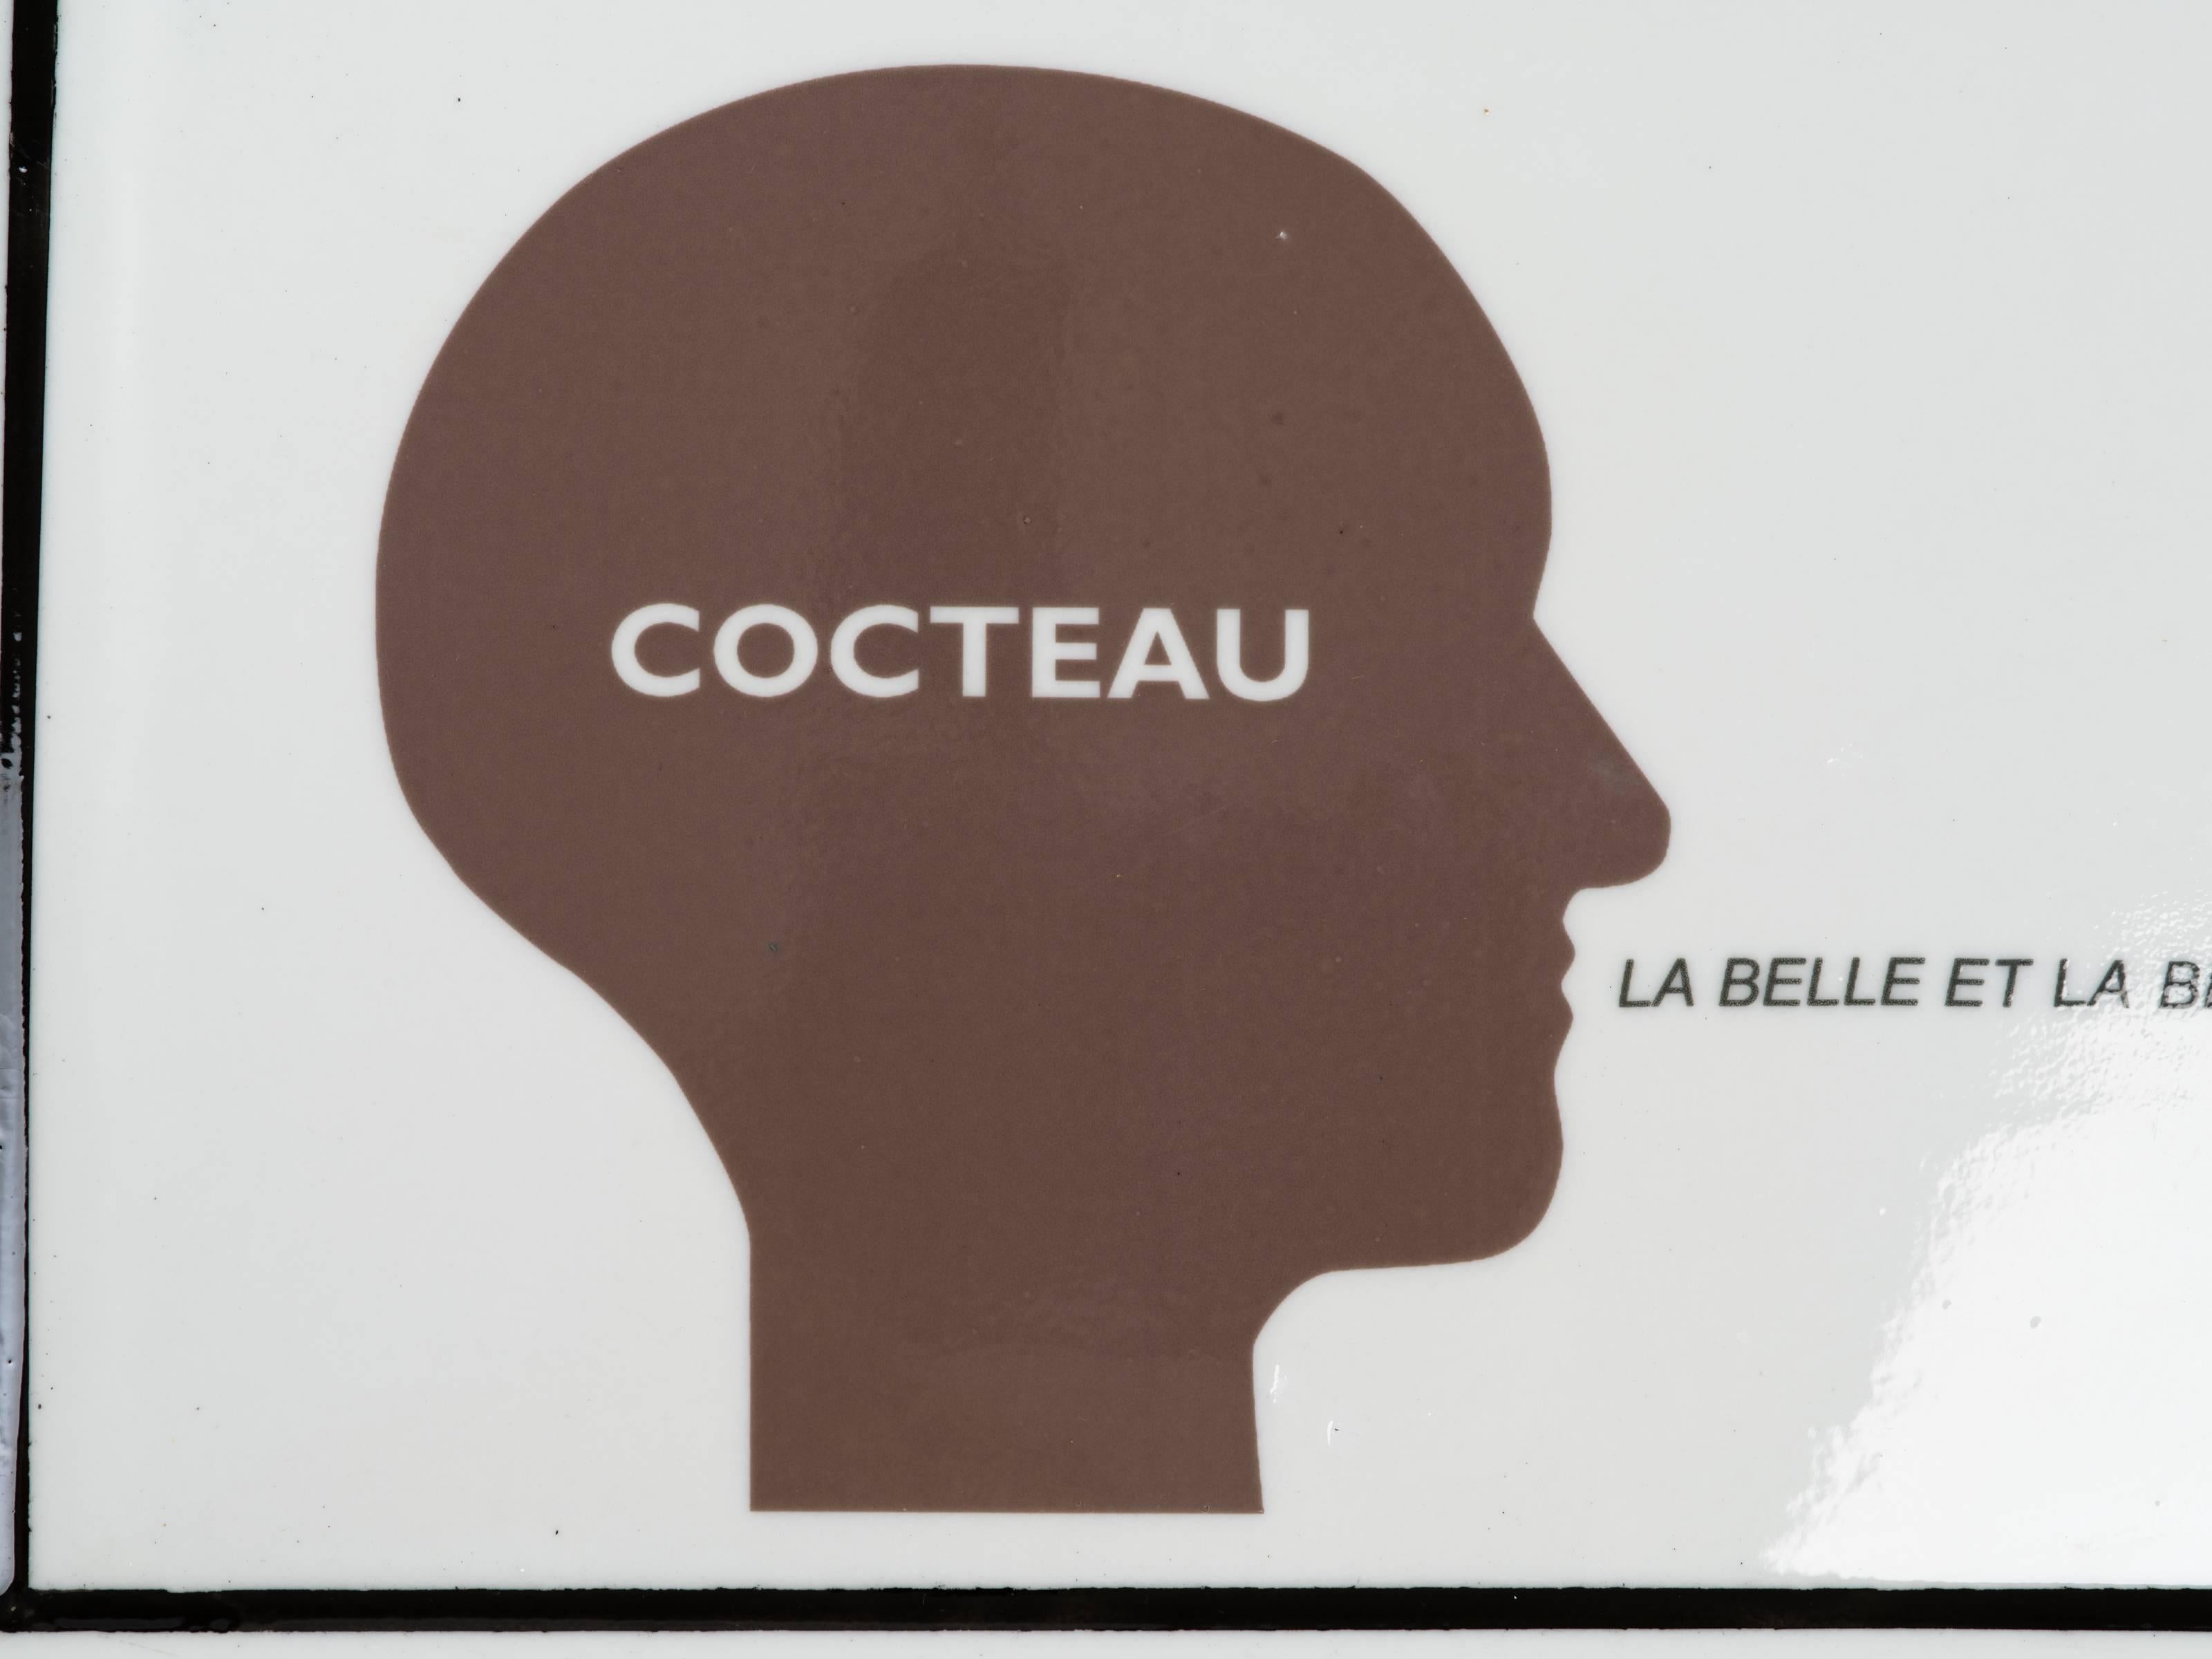 Cocteau, La Belle Et La Bete Serviertablett aus Keramik von der französischen Konzeptkünstlerin Nicola L. Signiert auf der Rückseite, Nicola L. 2007 Galerie A Rebours Edition 2/50.